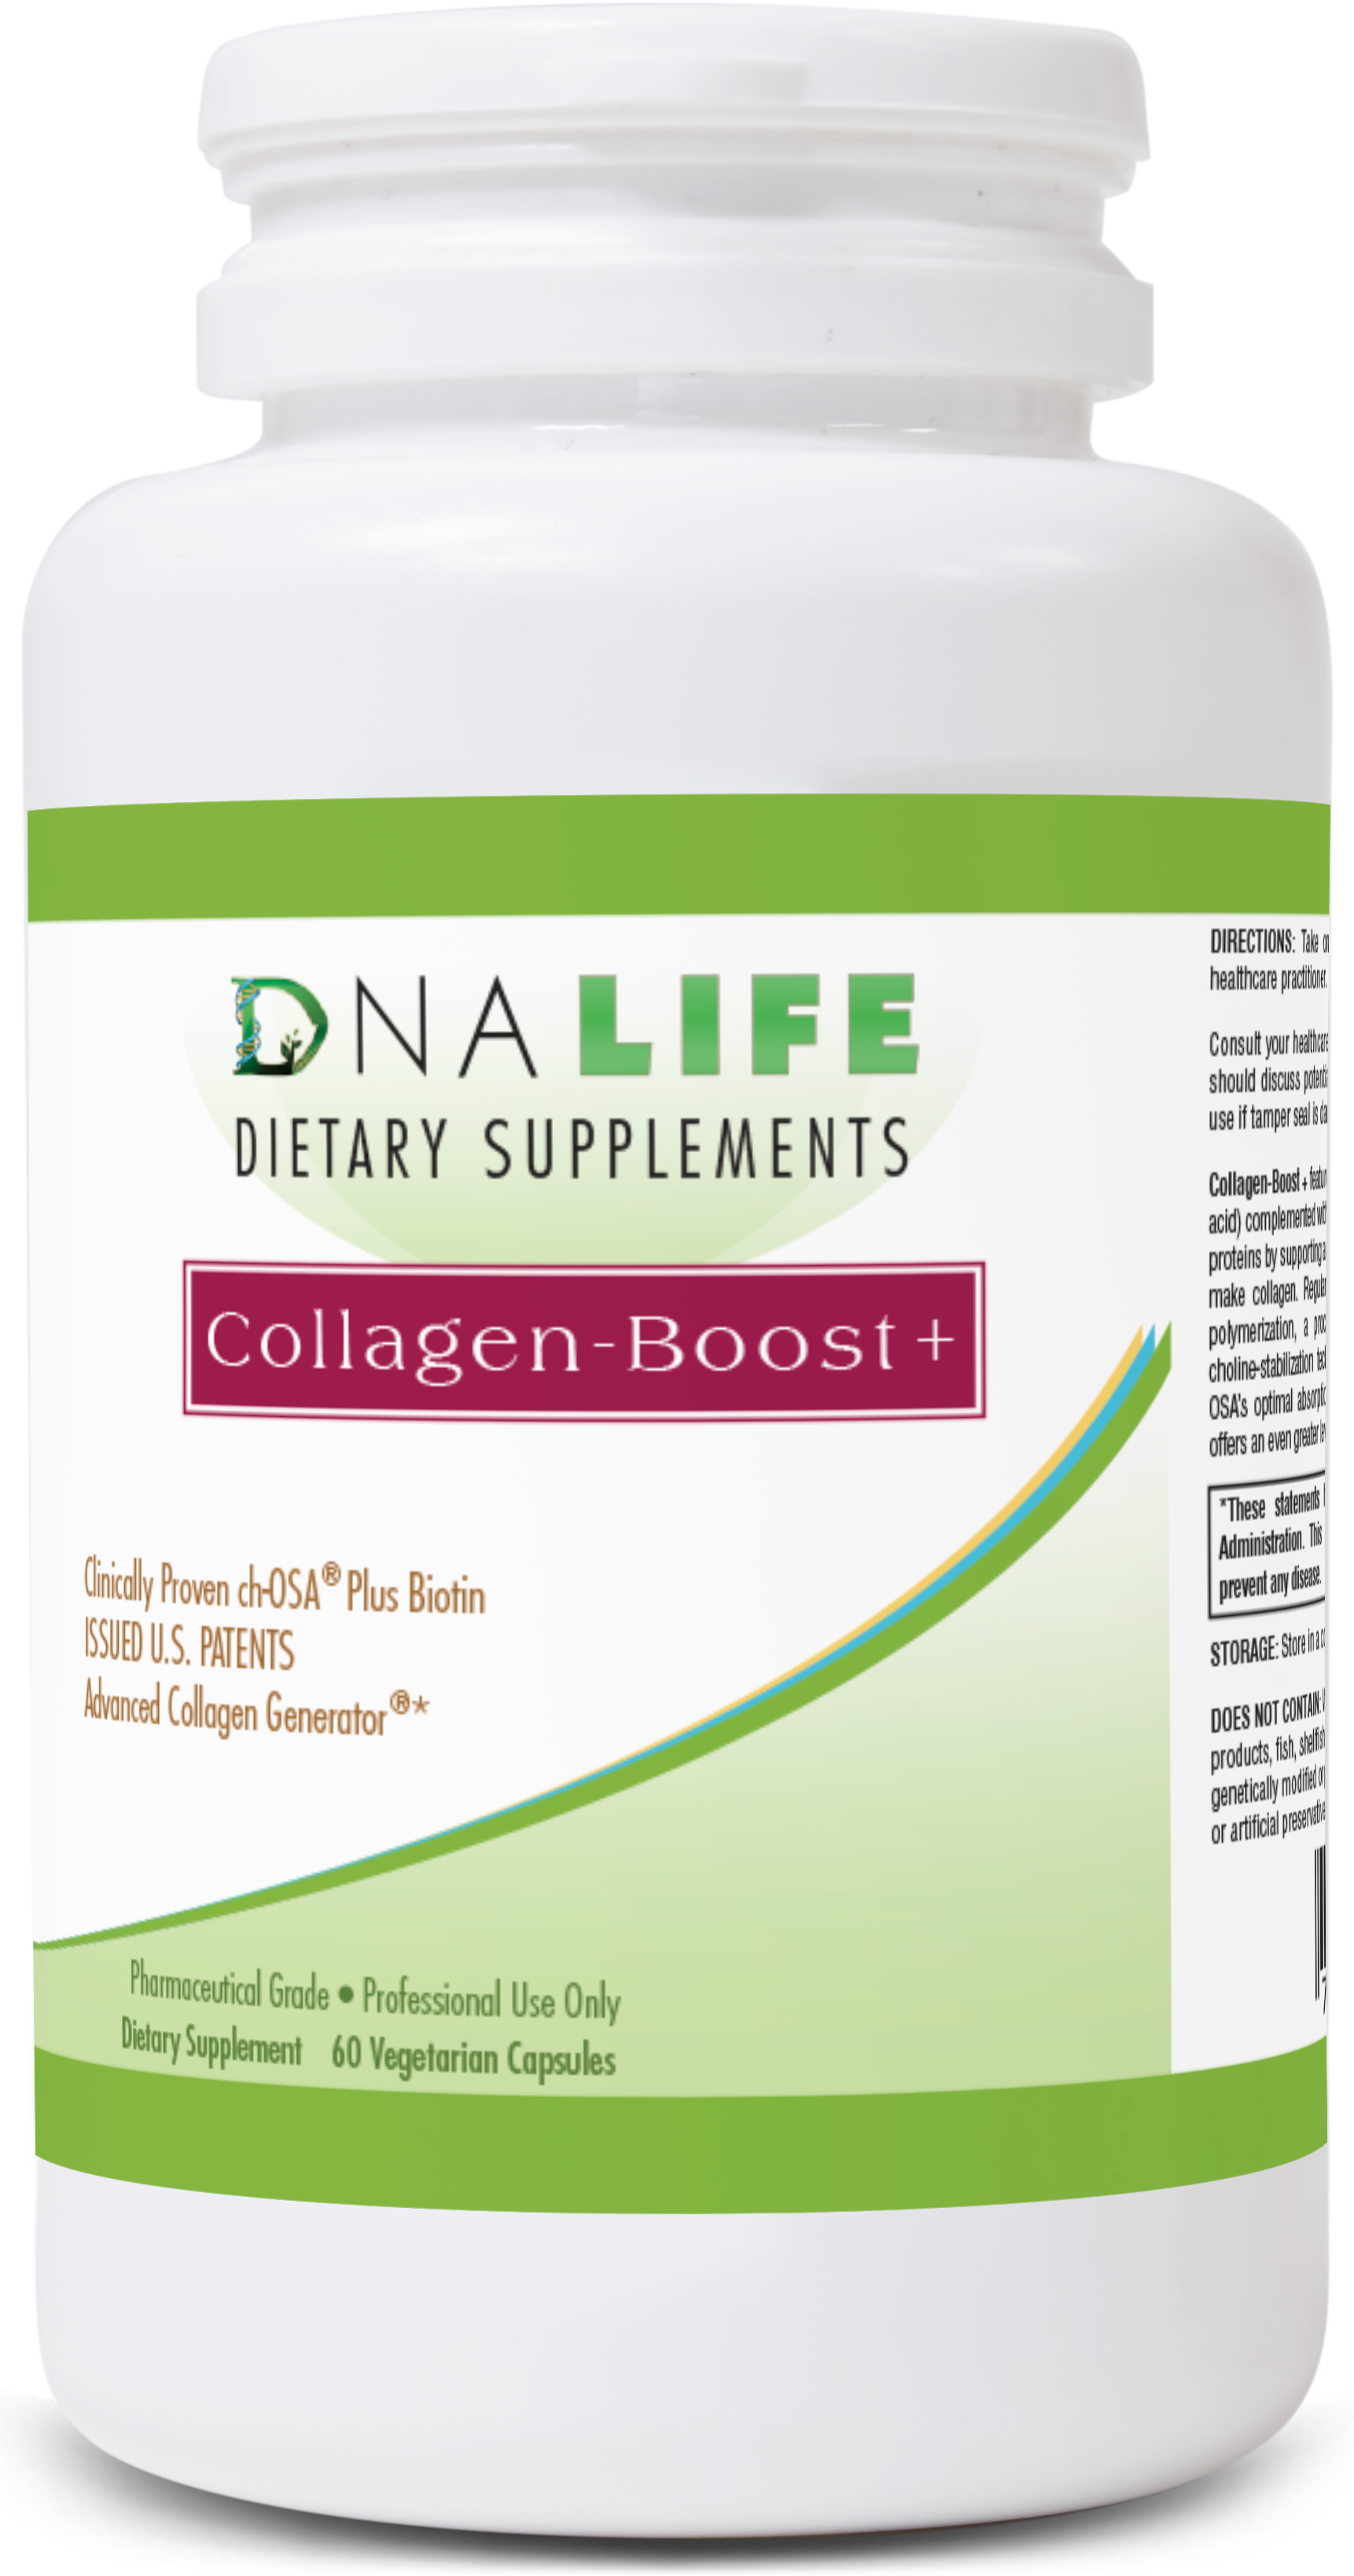 Collagen-Boost